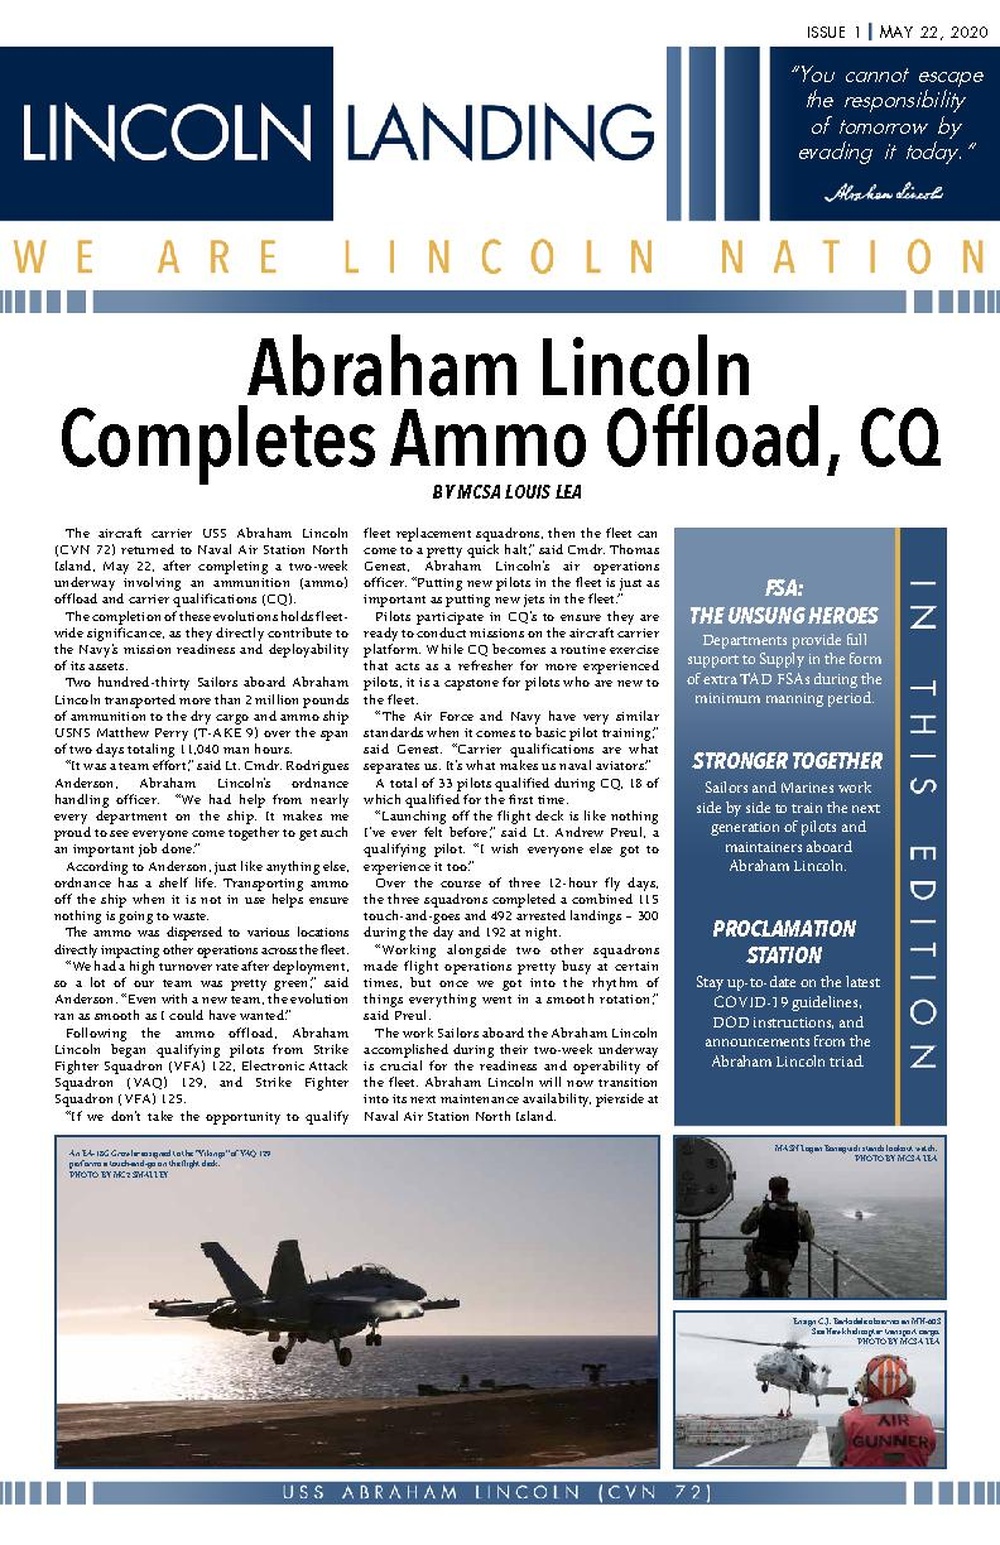 Lincoln Landing newsletter